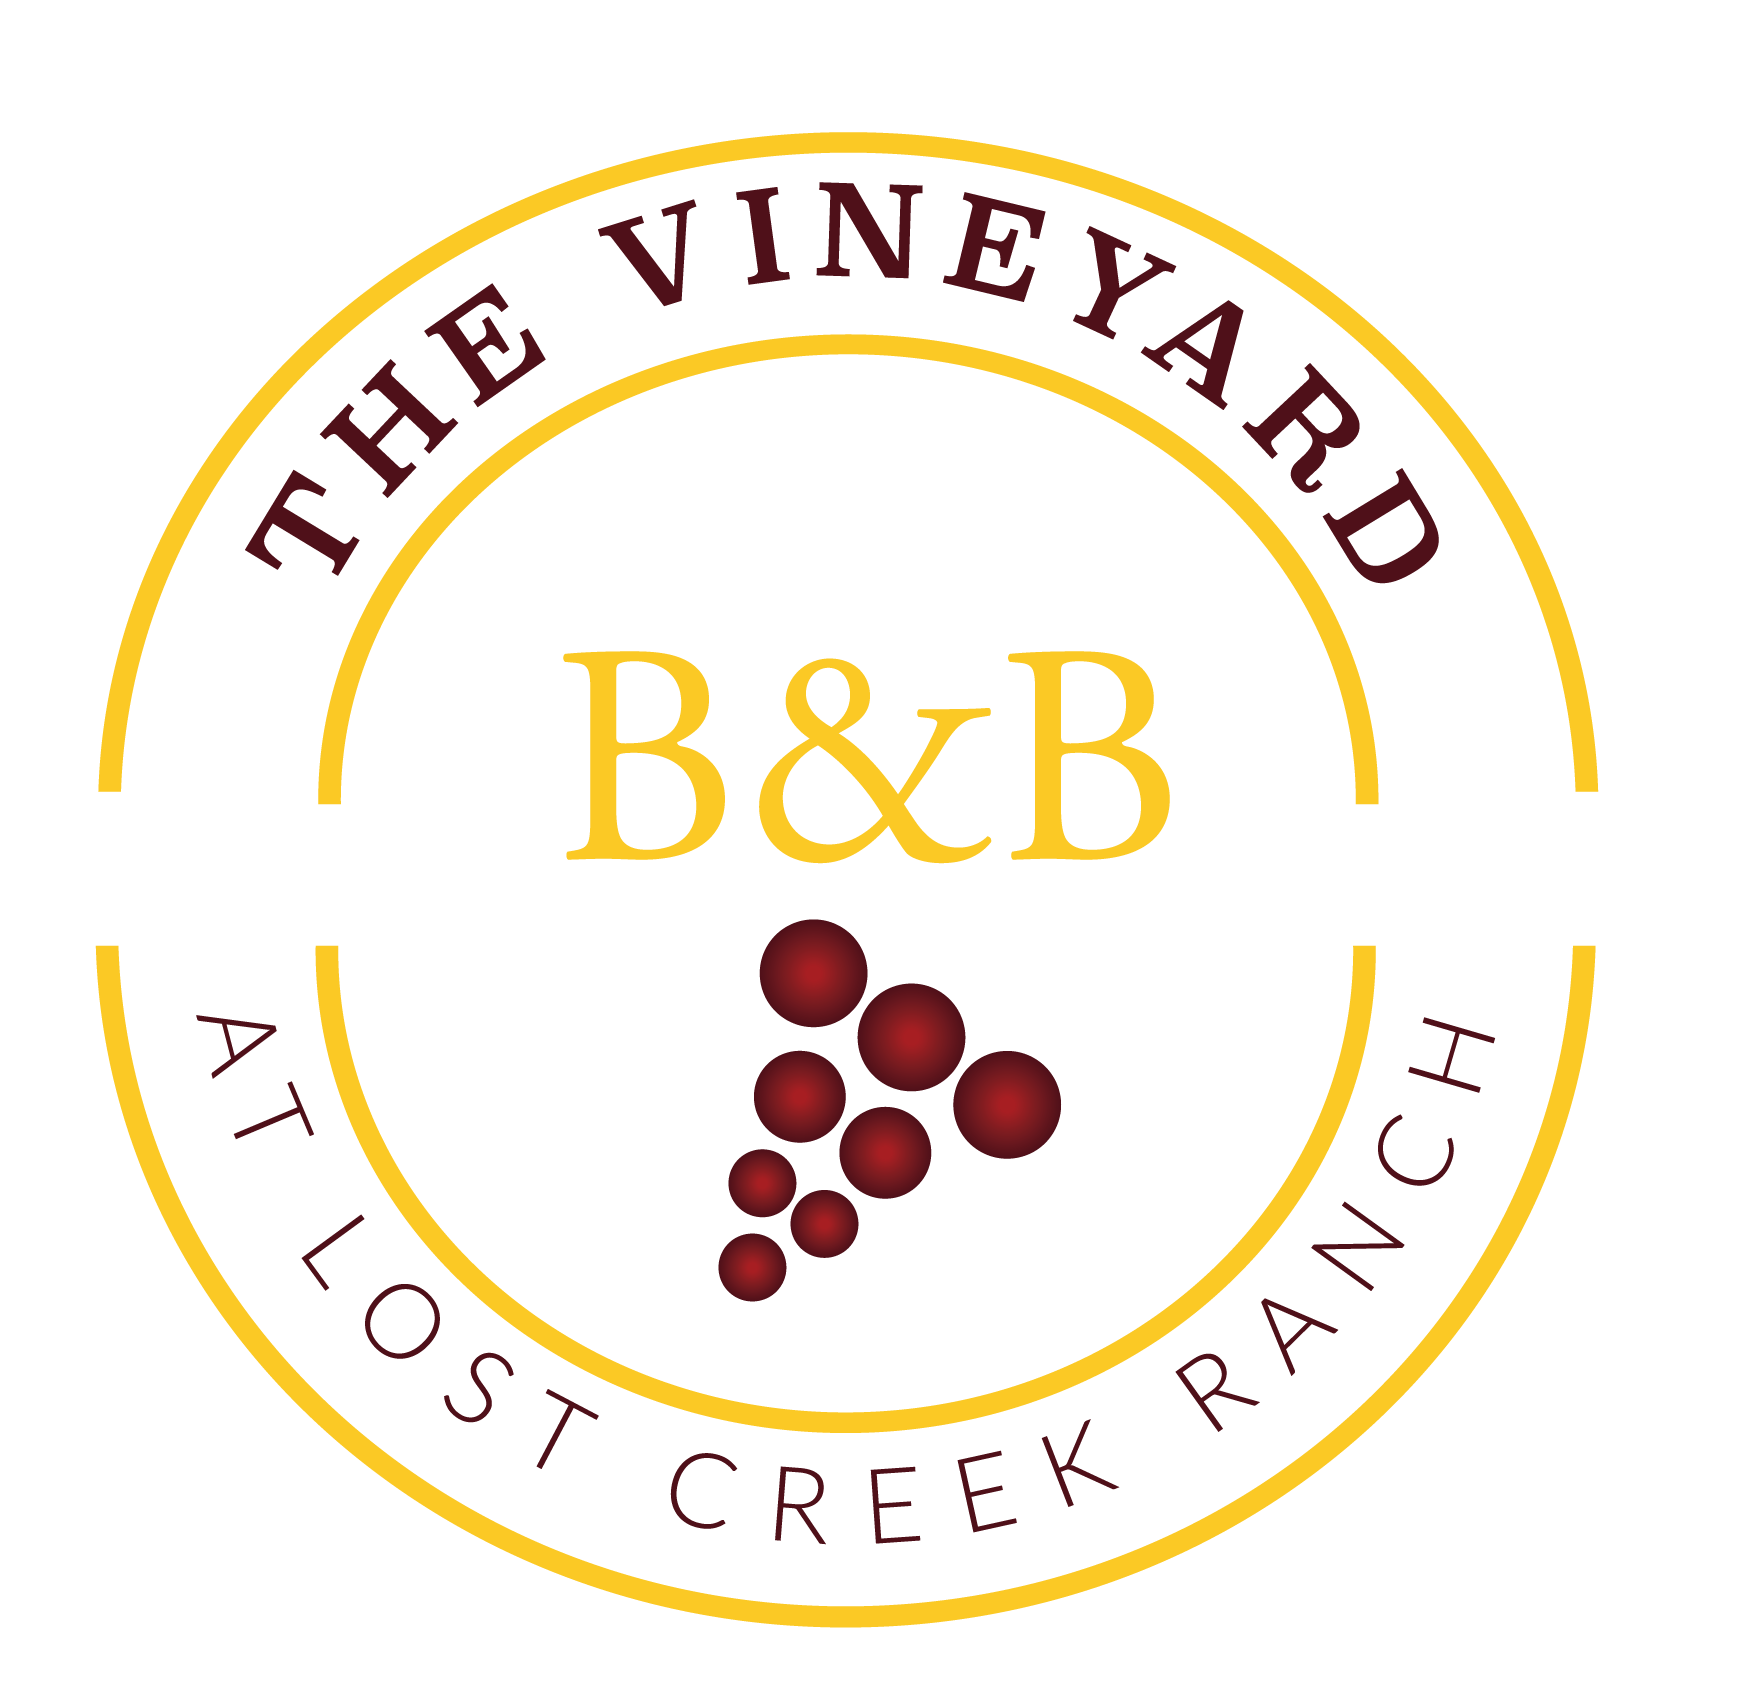 B and B in a Circle Logo - Menu - The Vineyard B and B at Lost Creek